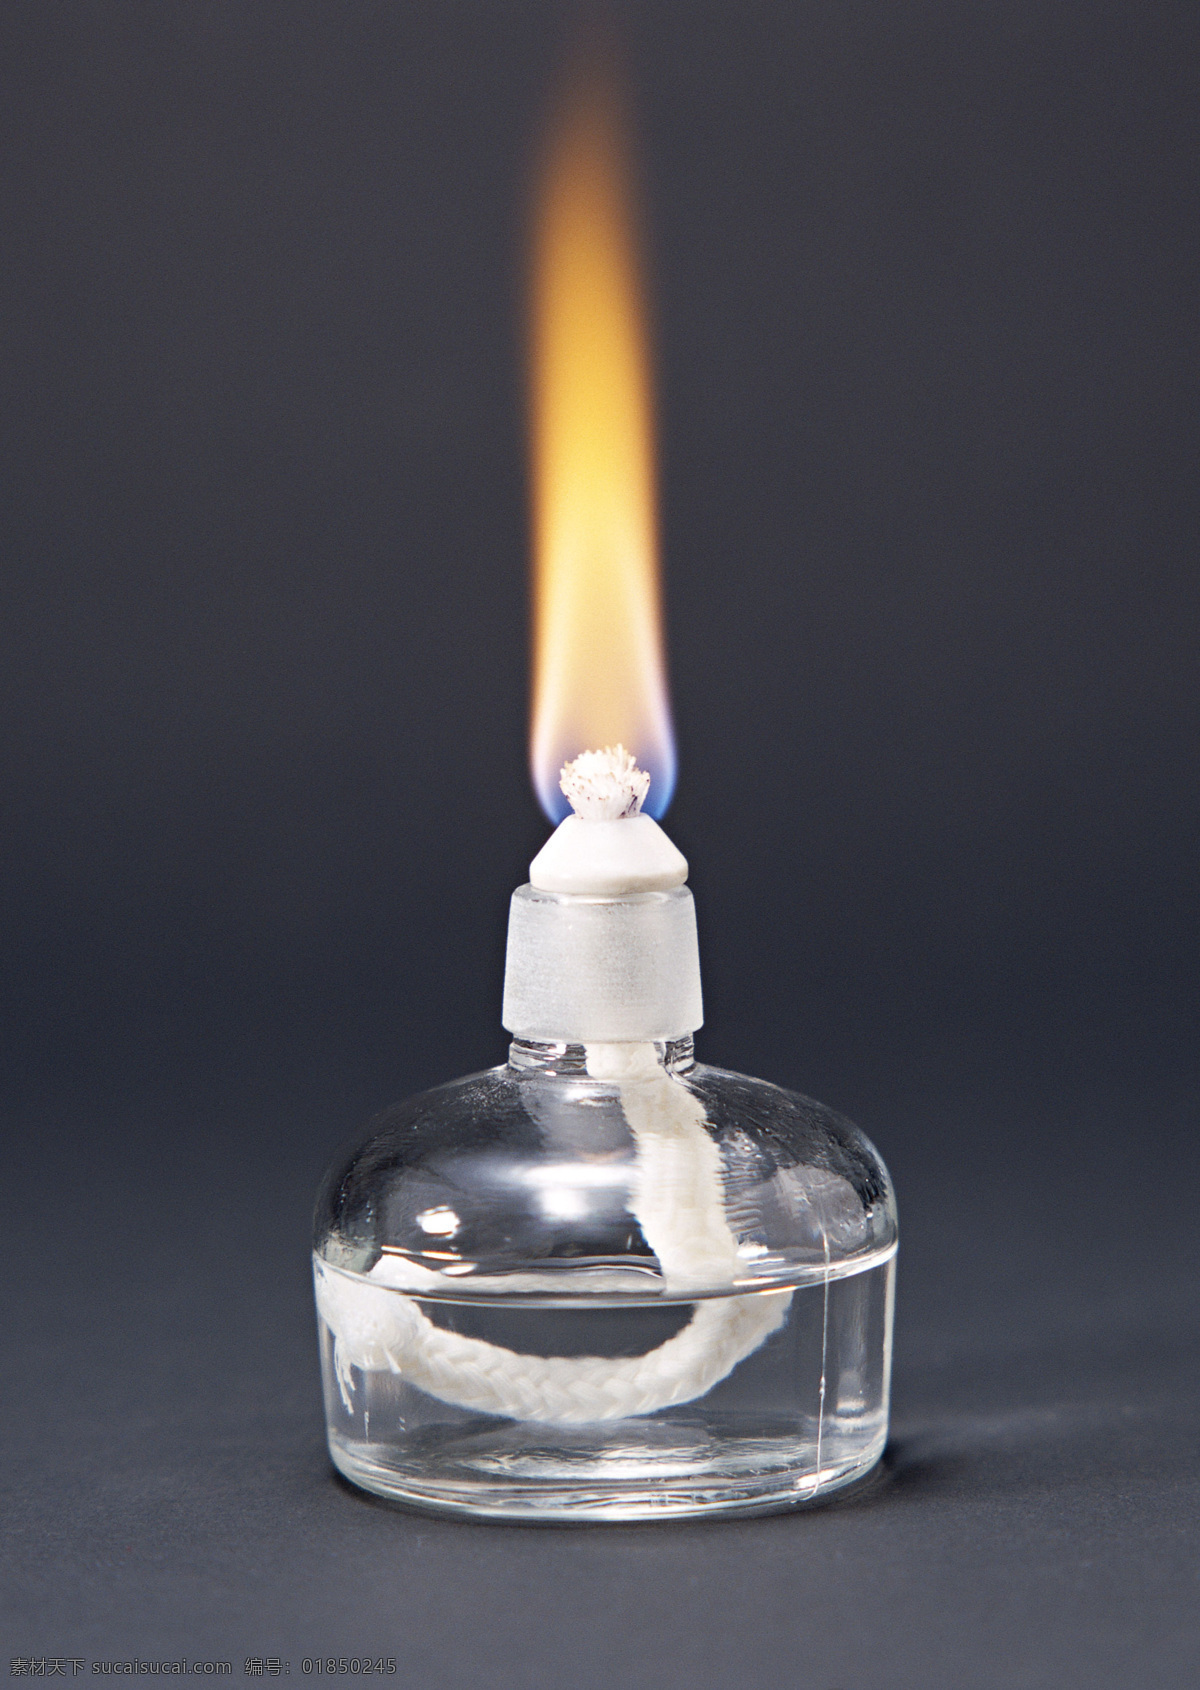 高清 酒精灯 火焰 科学研究 实验 现代科技 装饰素材 灯饰素材